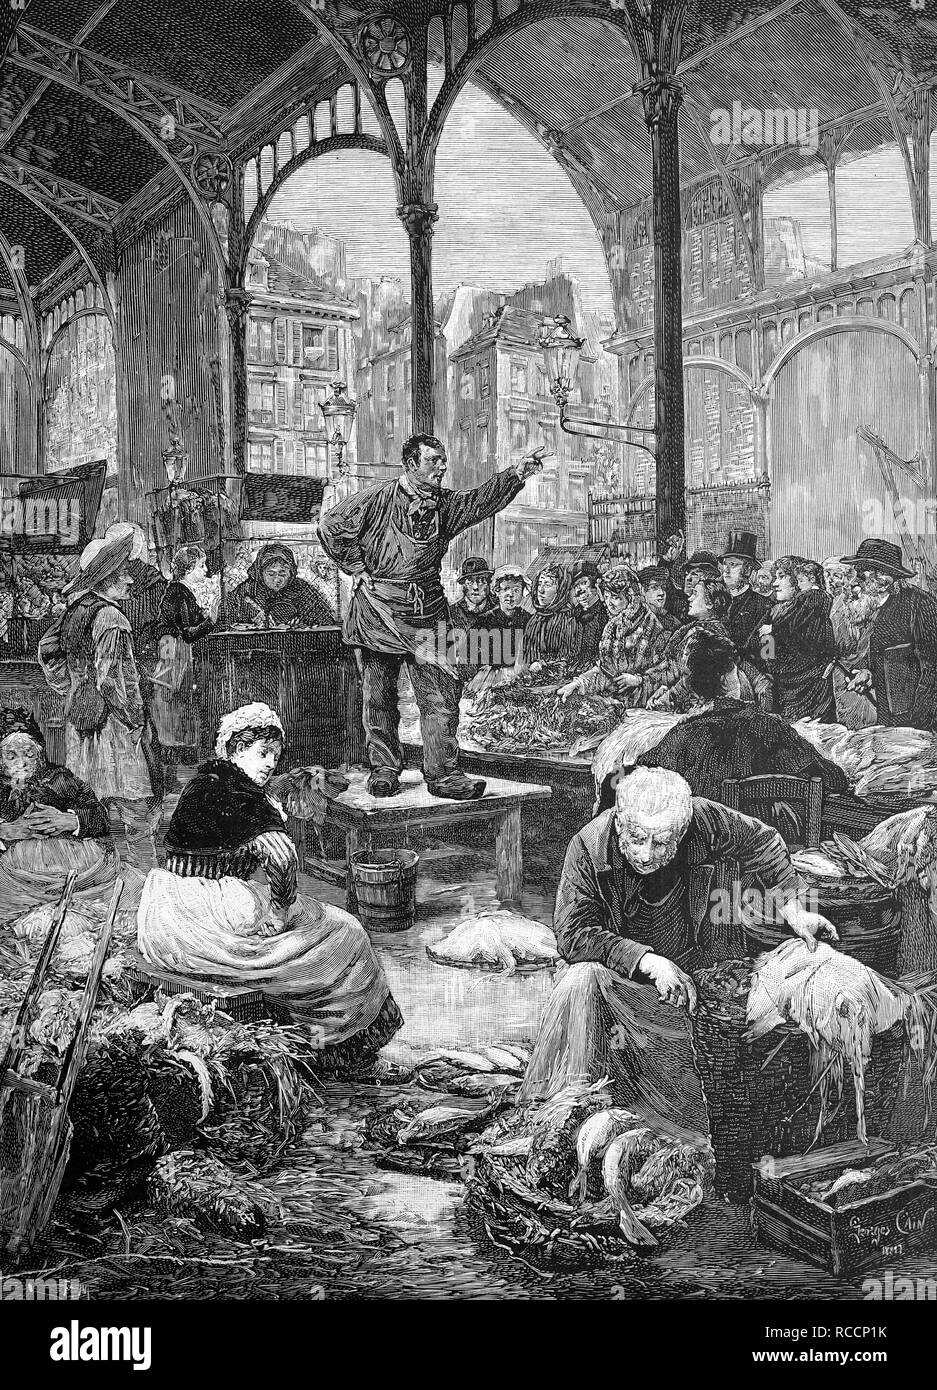 Marché du poisson dans les Halles de Paris, France, historique de la gravure sur bois, vers 1888 Banque D'Images